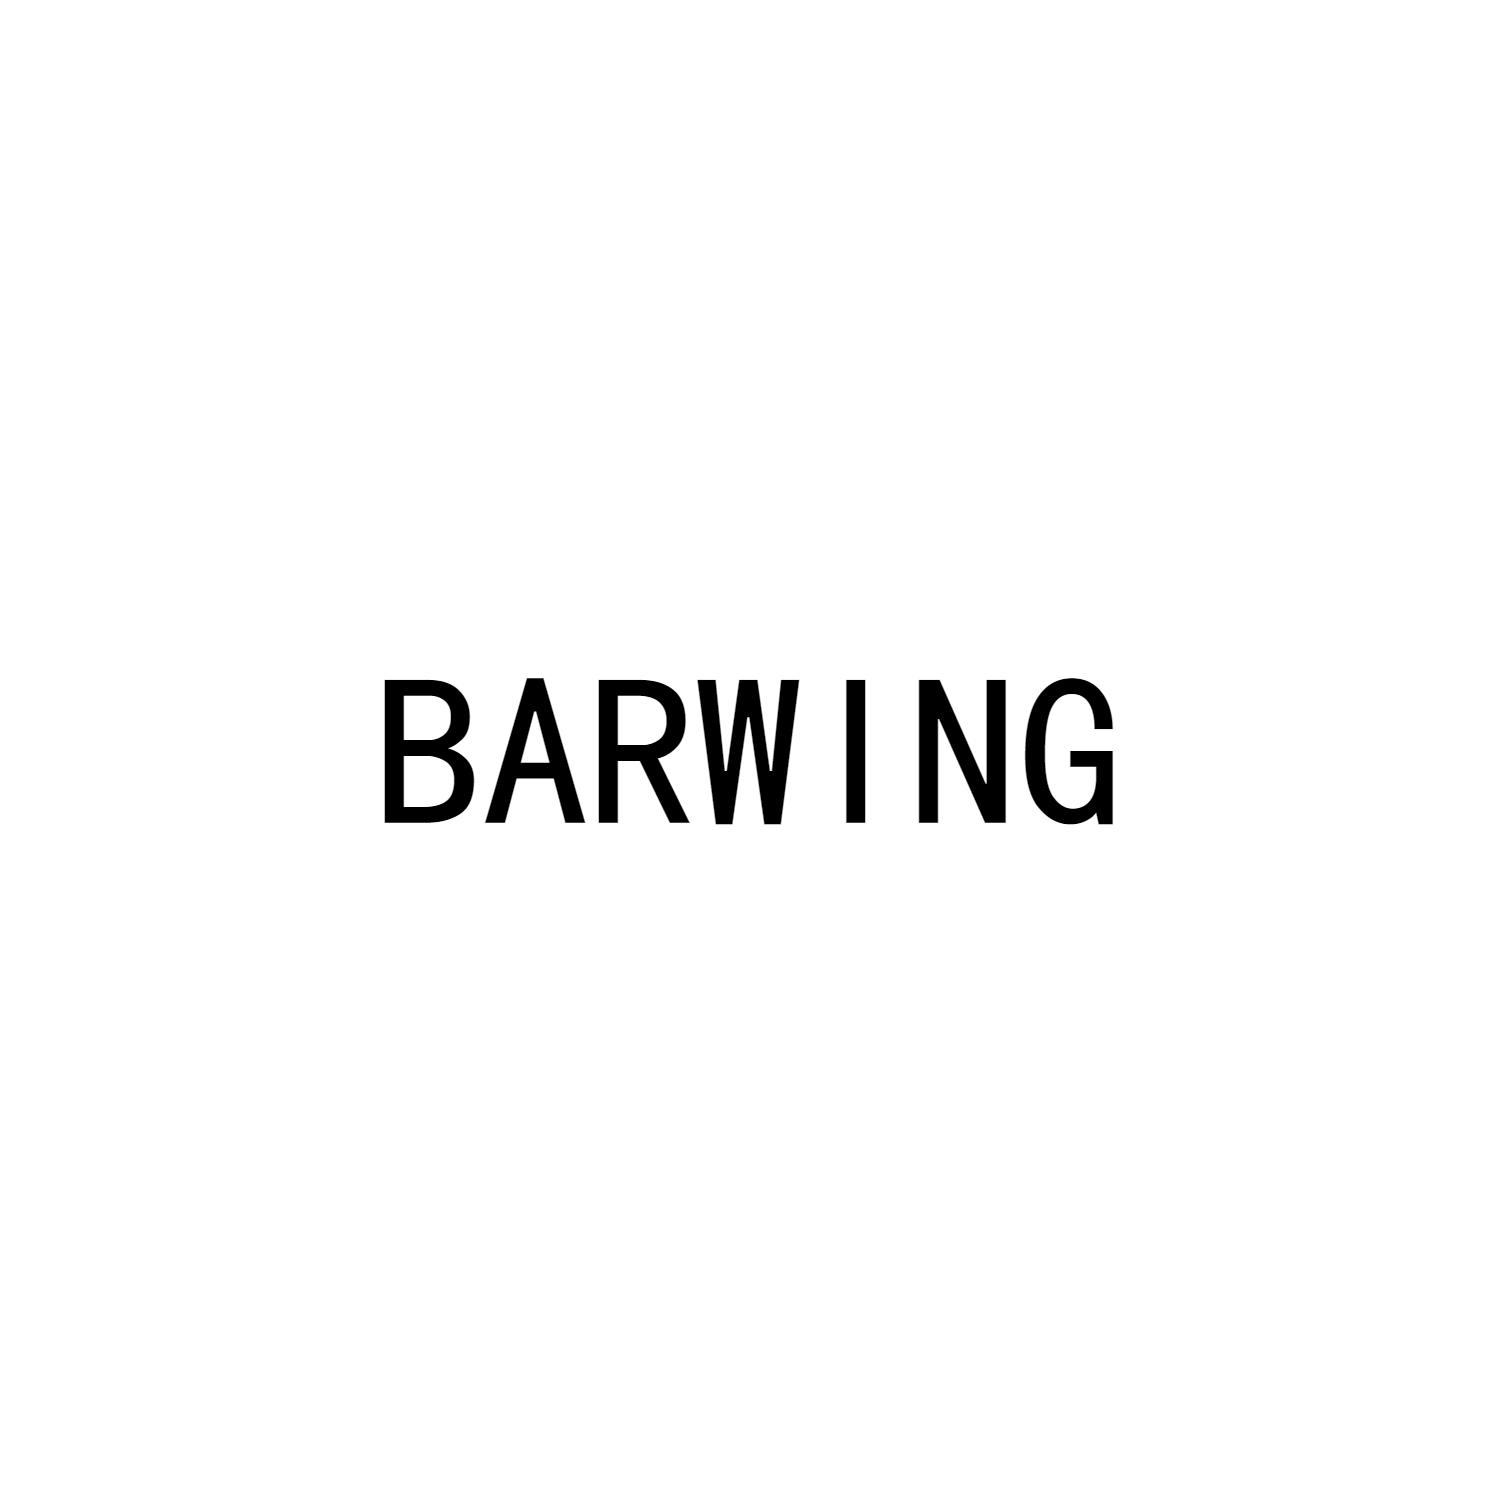 BARWING